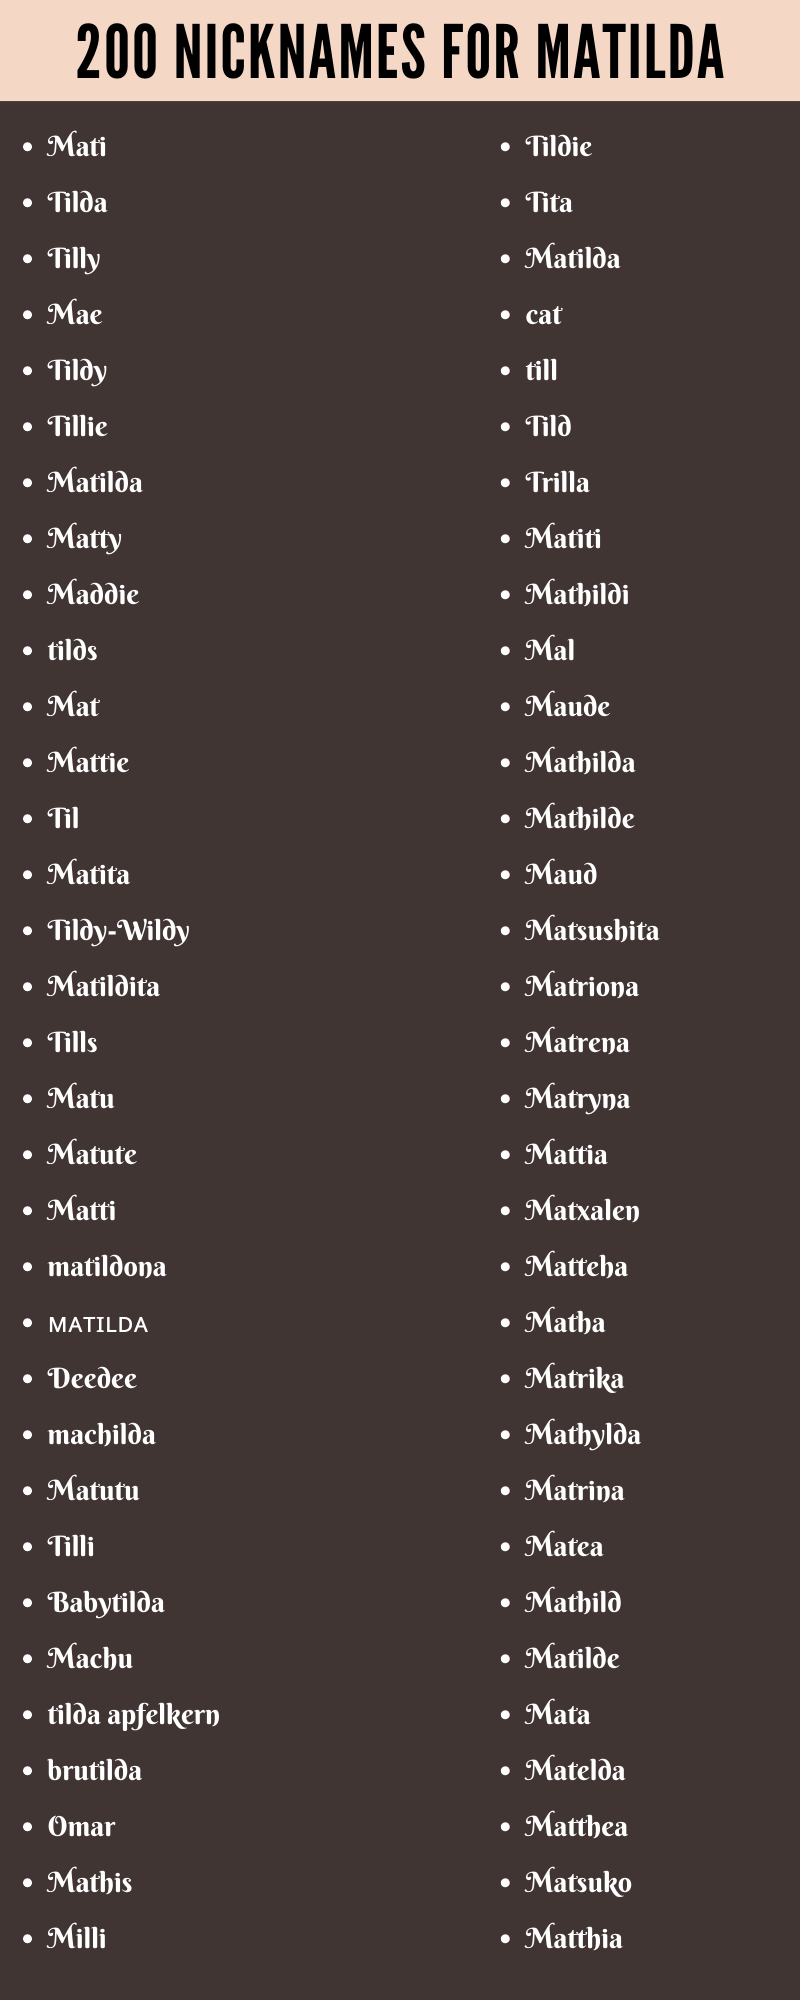 Nicknames For Matilda